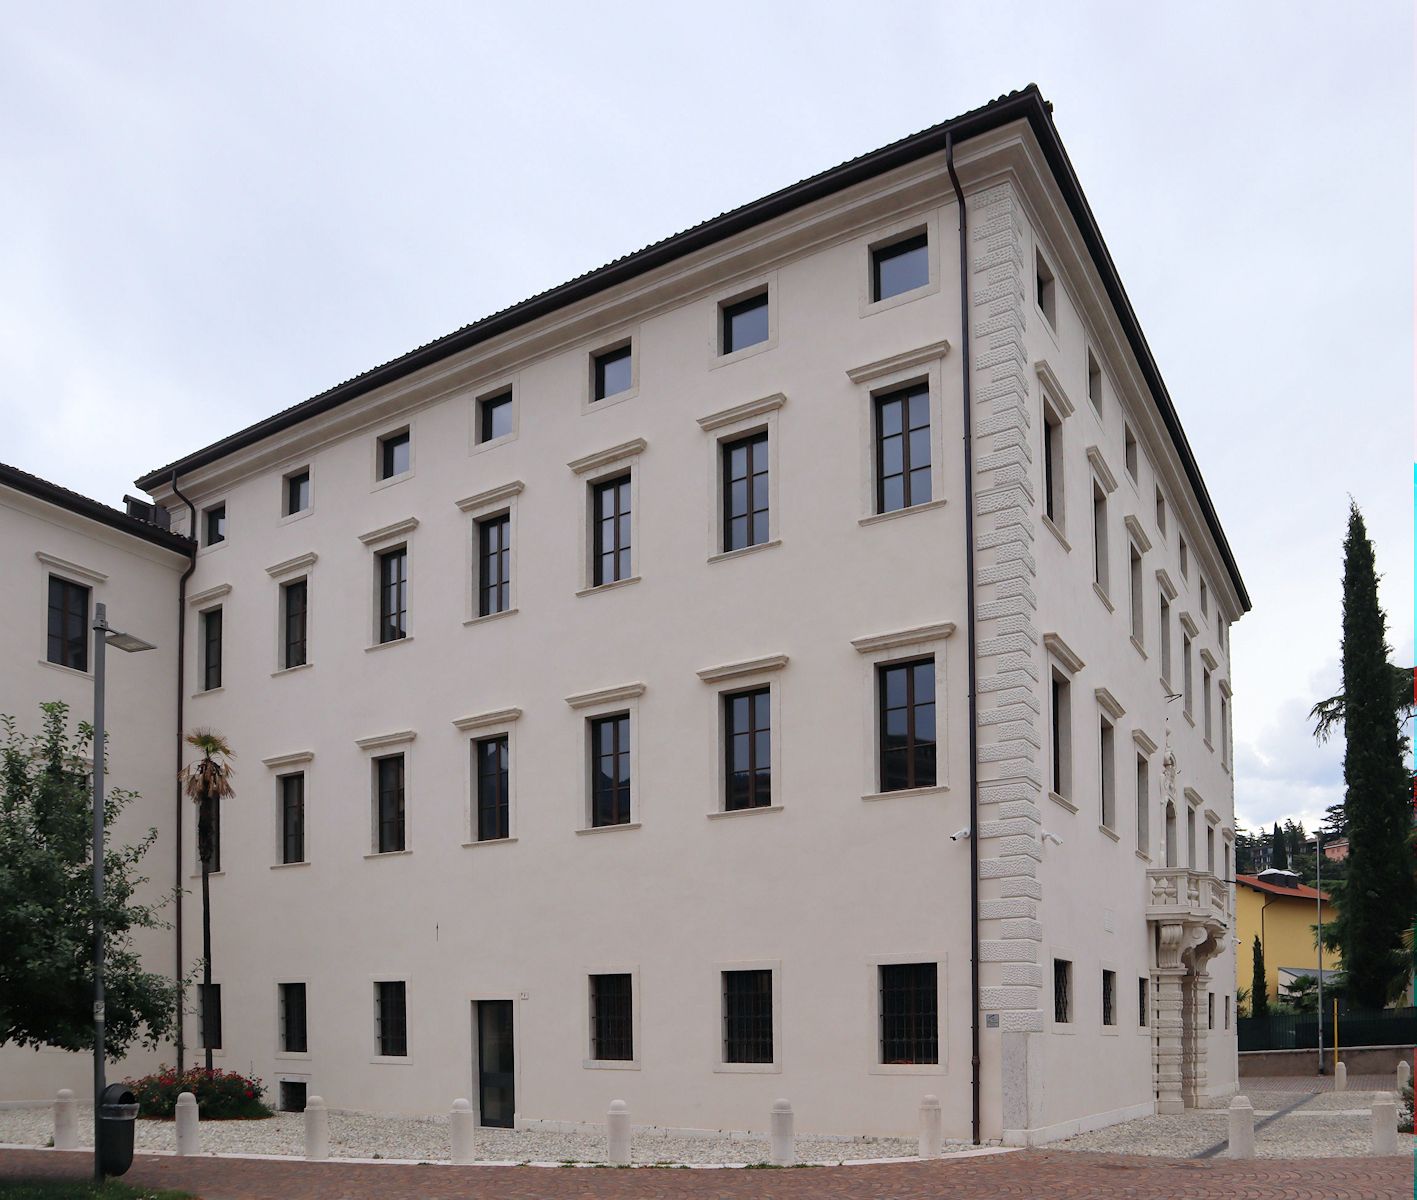 Palazzo Rosmini in Rovereto